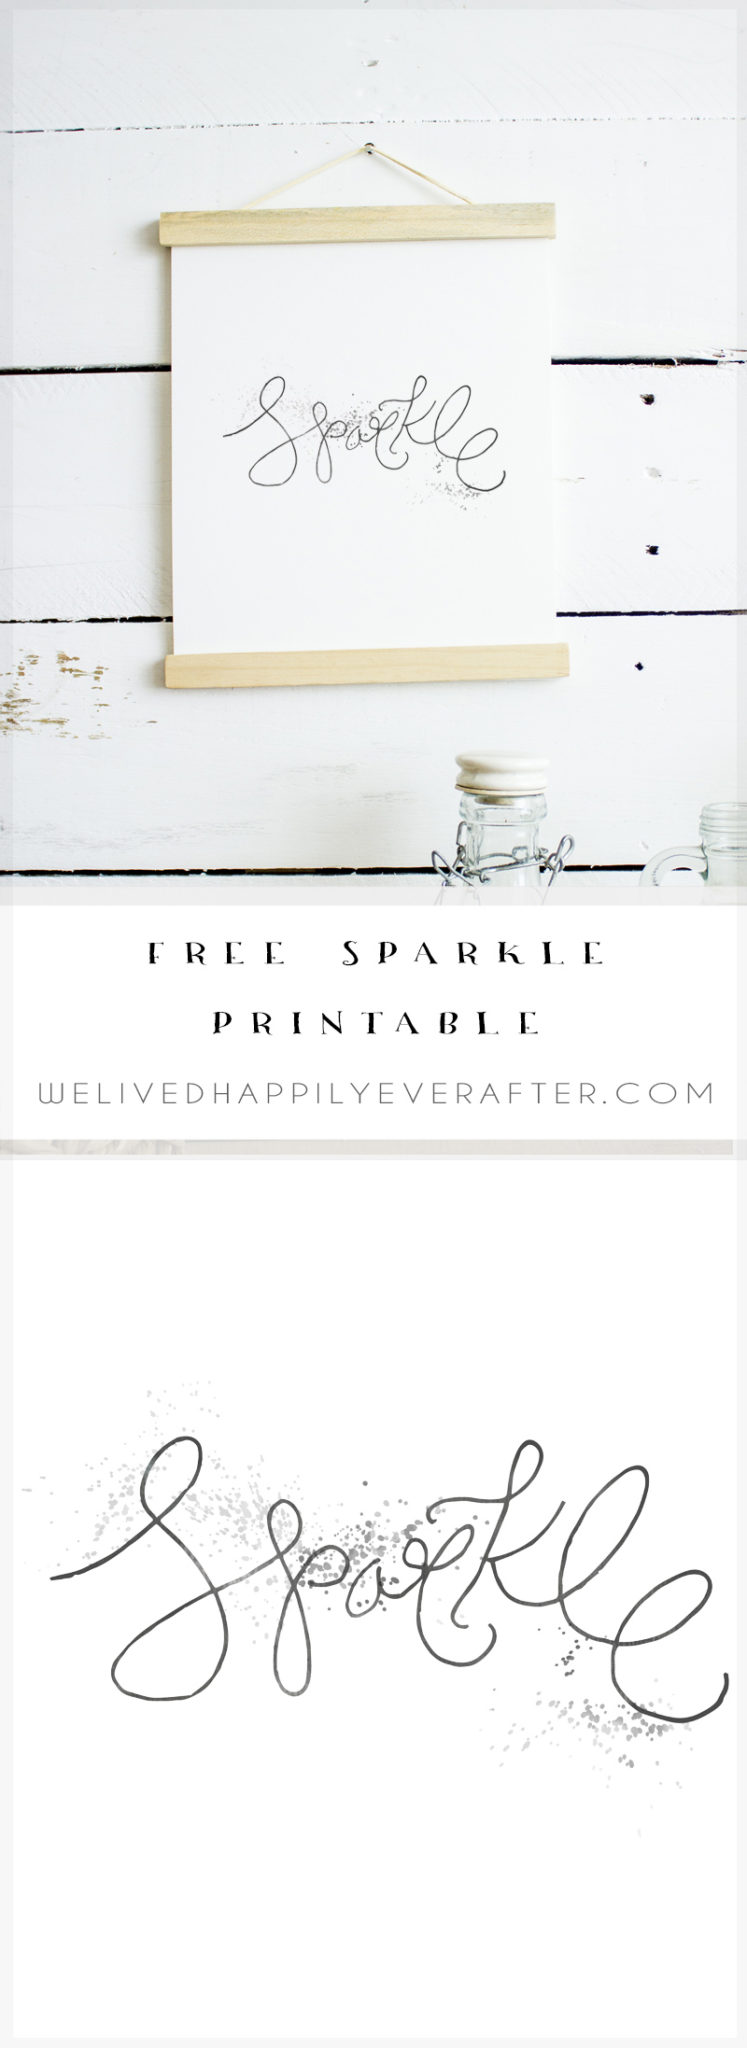 Free "Sparkle" Printable